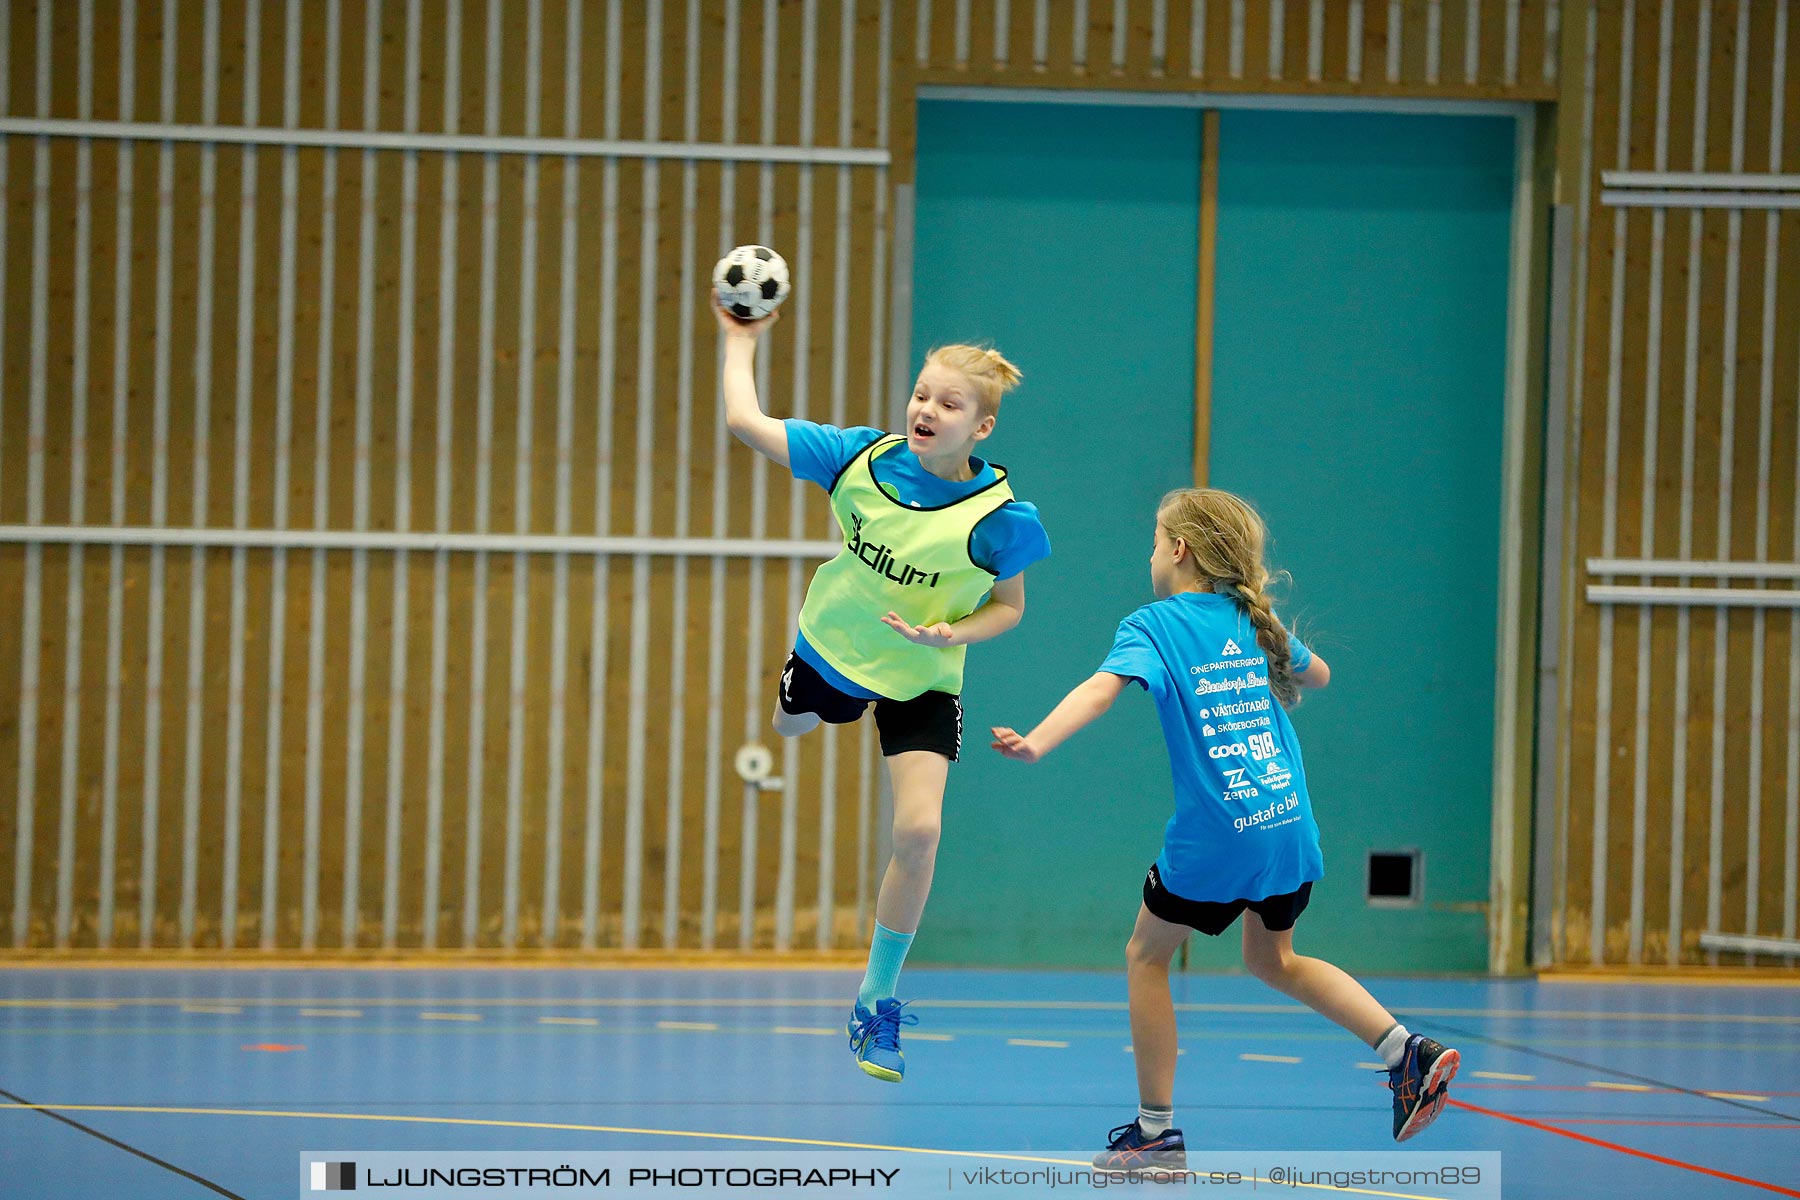 Klasshandboll Skövde 2019 Åldersklass 2008,mix,Arena Skövde,Skövde,Sverige,Handboll,,2019,211756